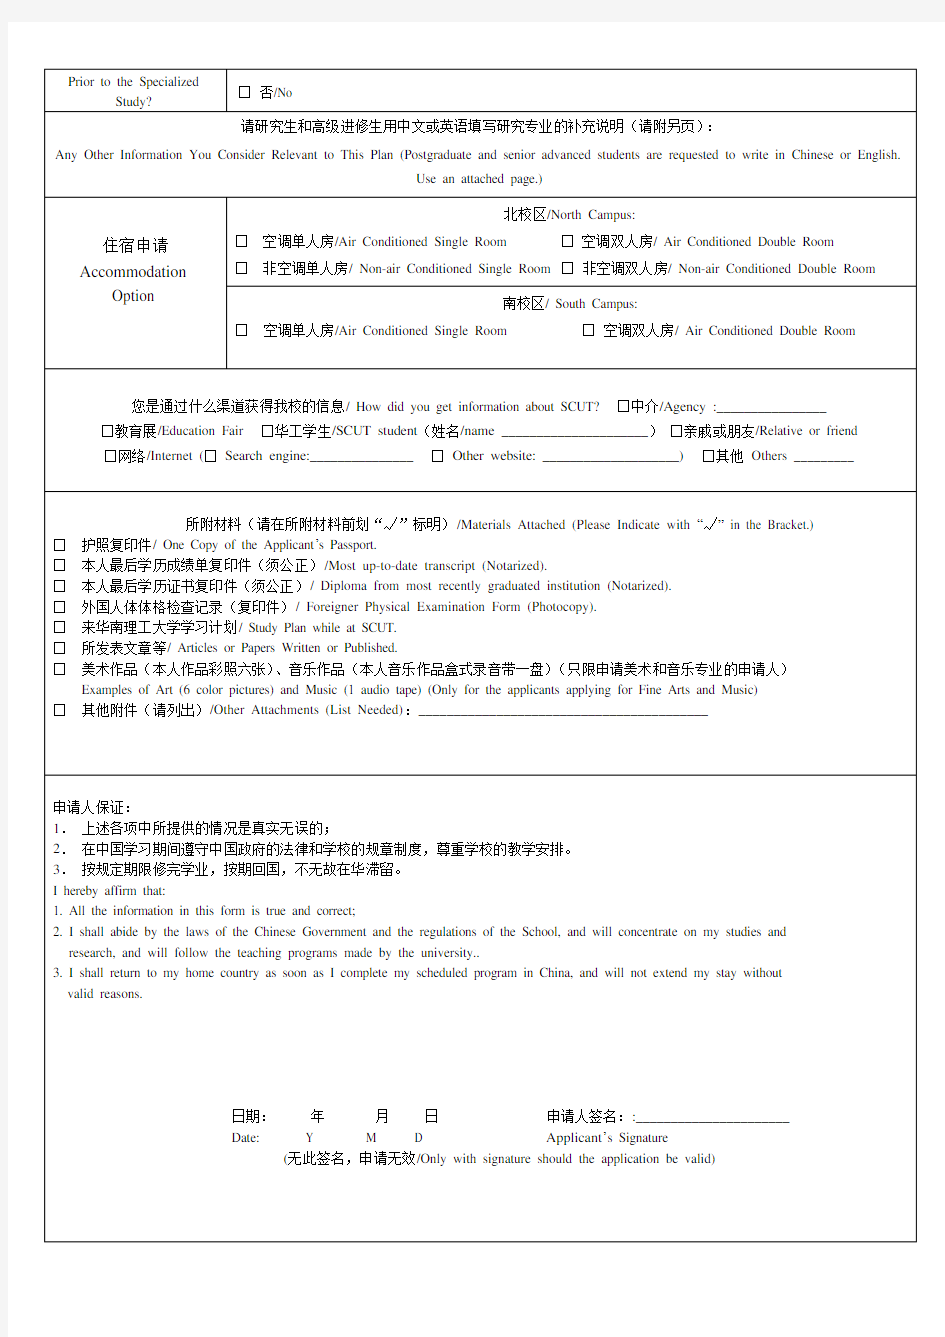 外国留学生入学申请表-华南理工大学